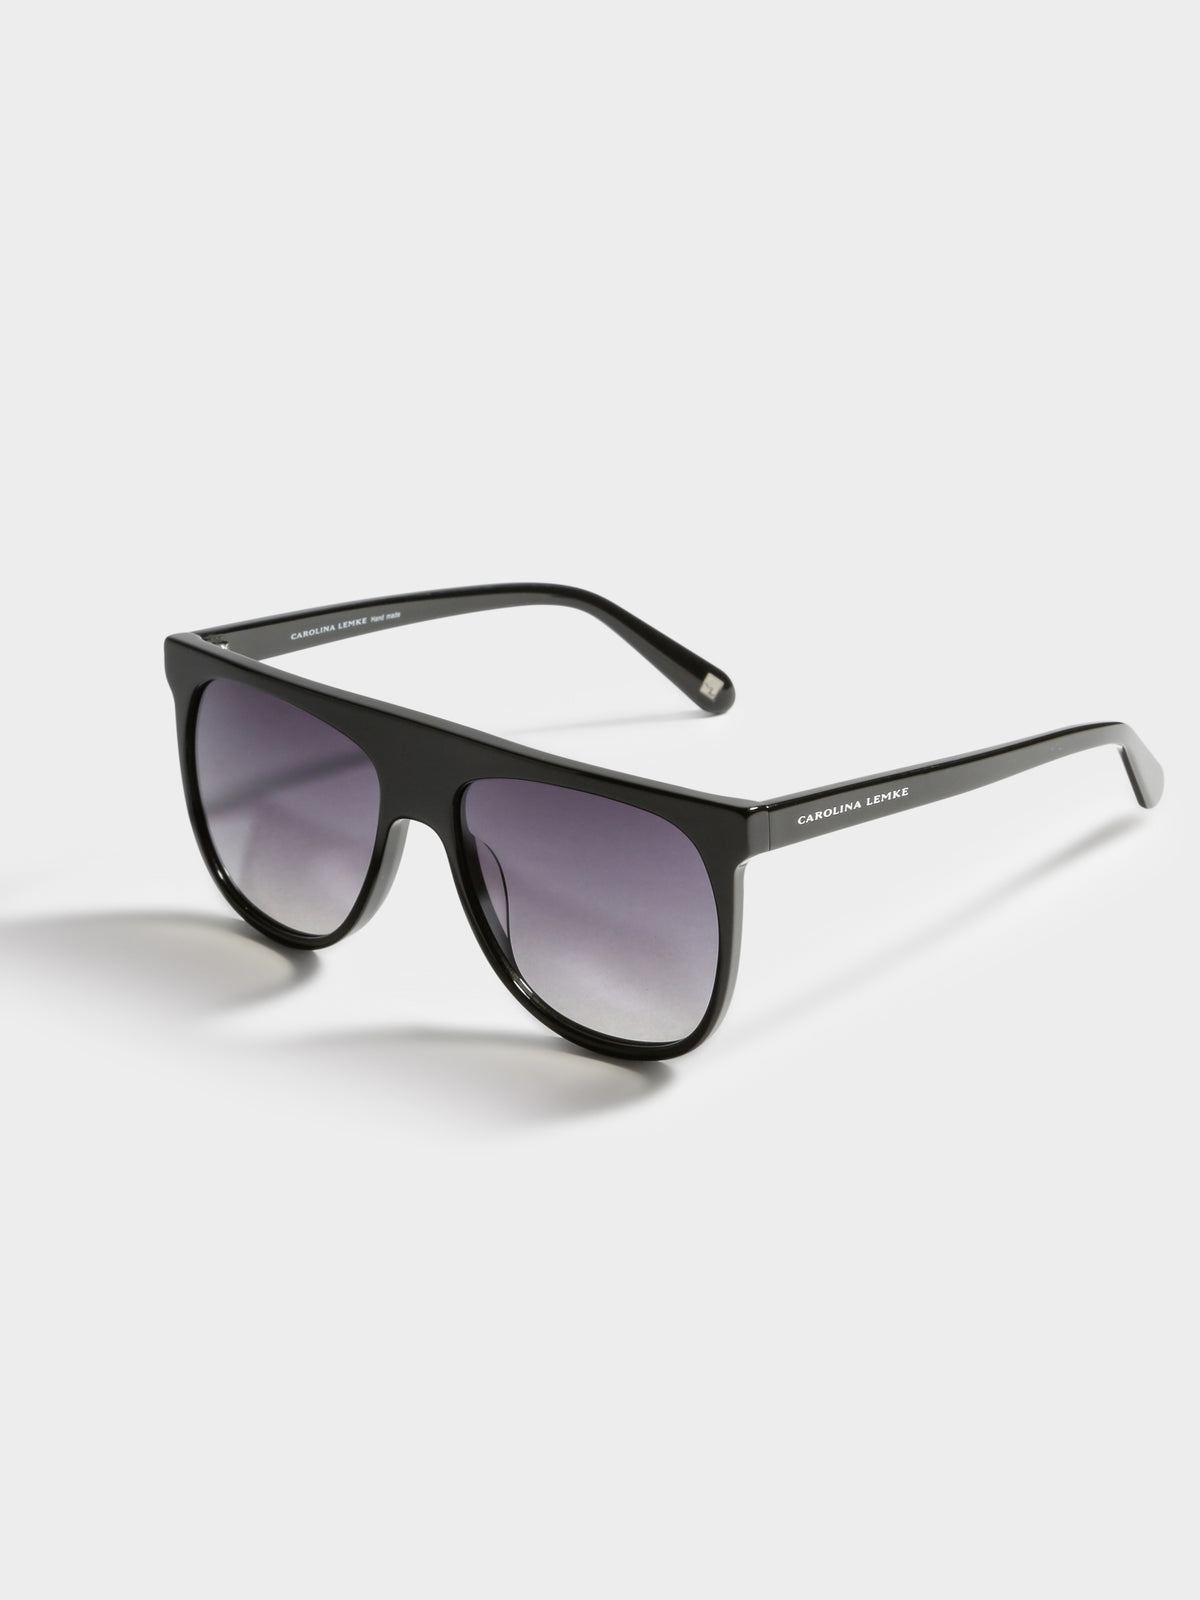 Polo Sunglasses in Black